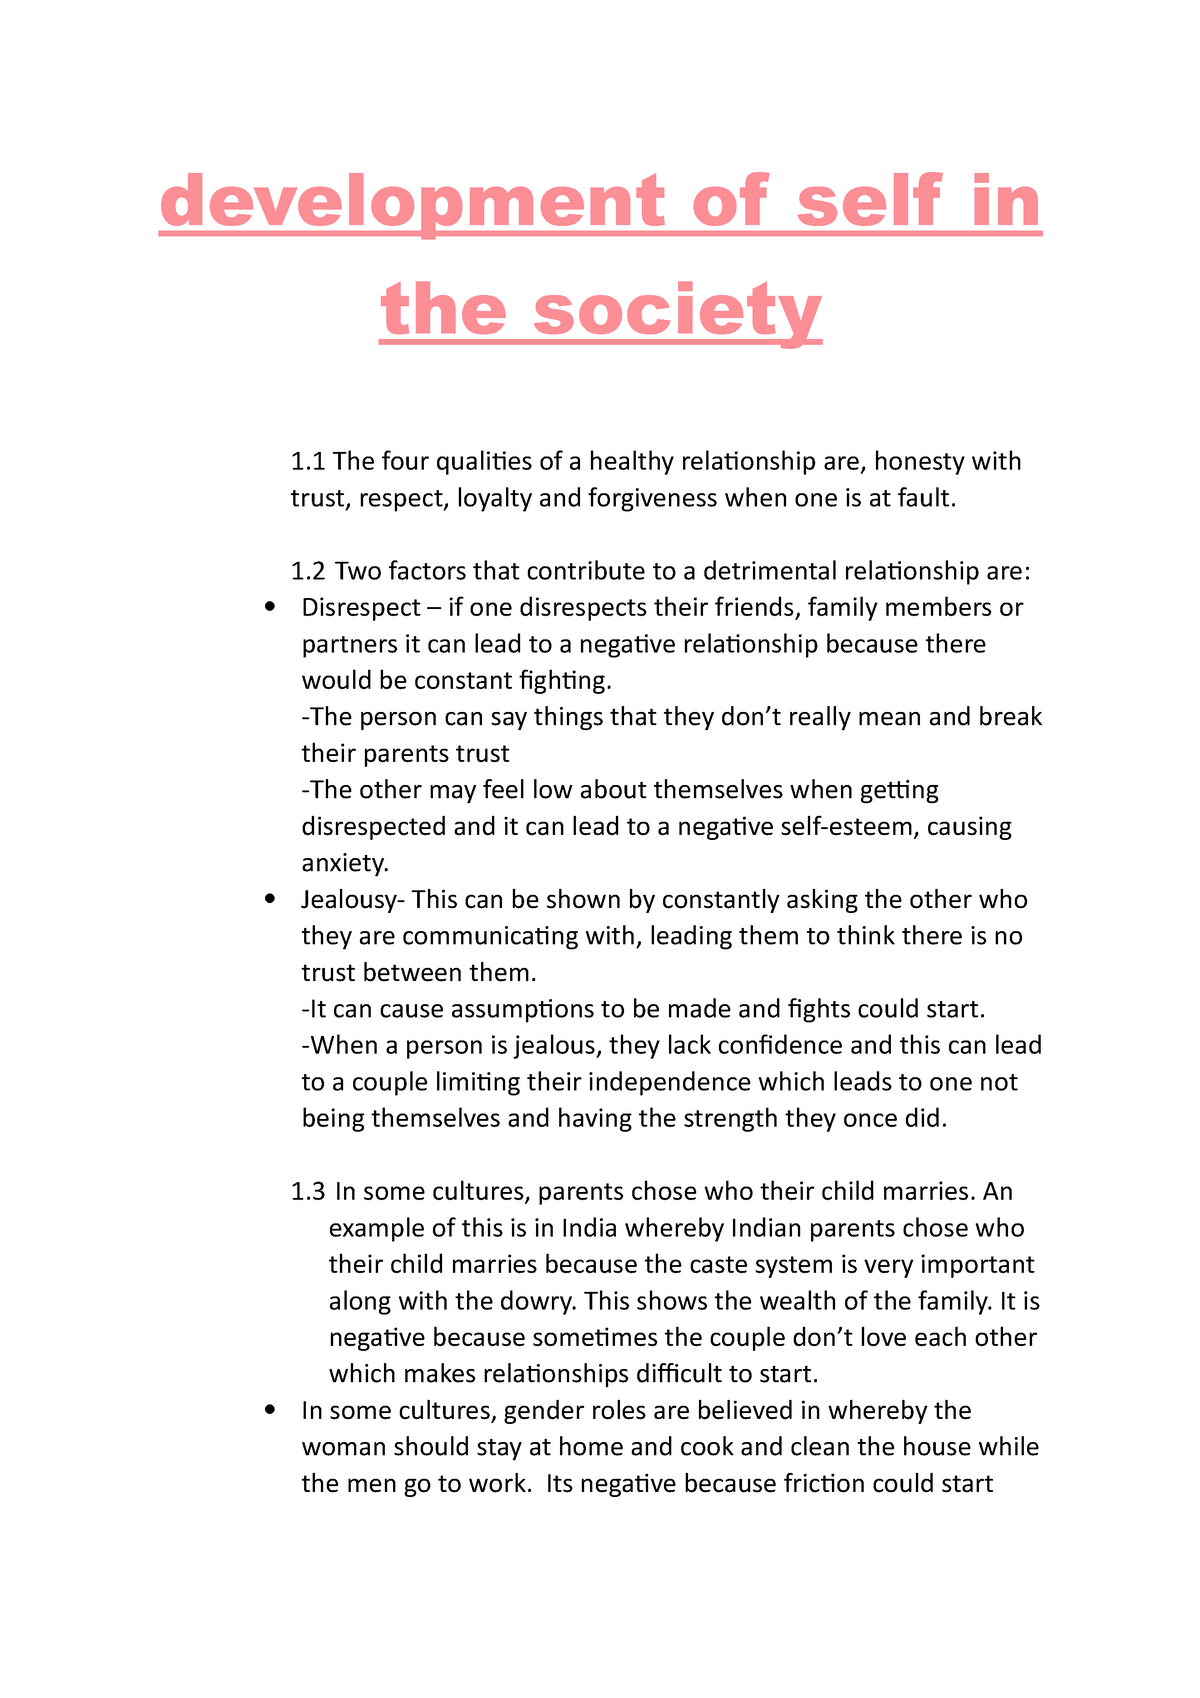 essay on development of society